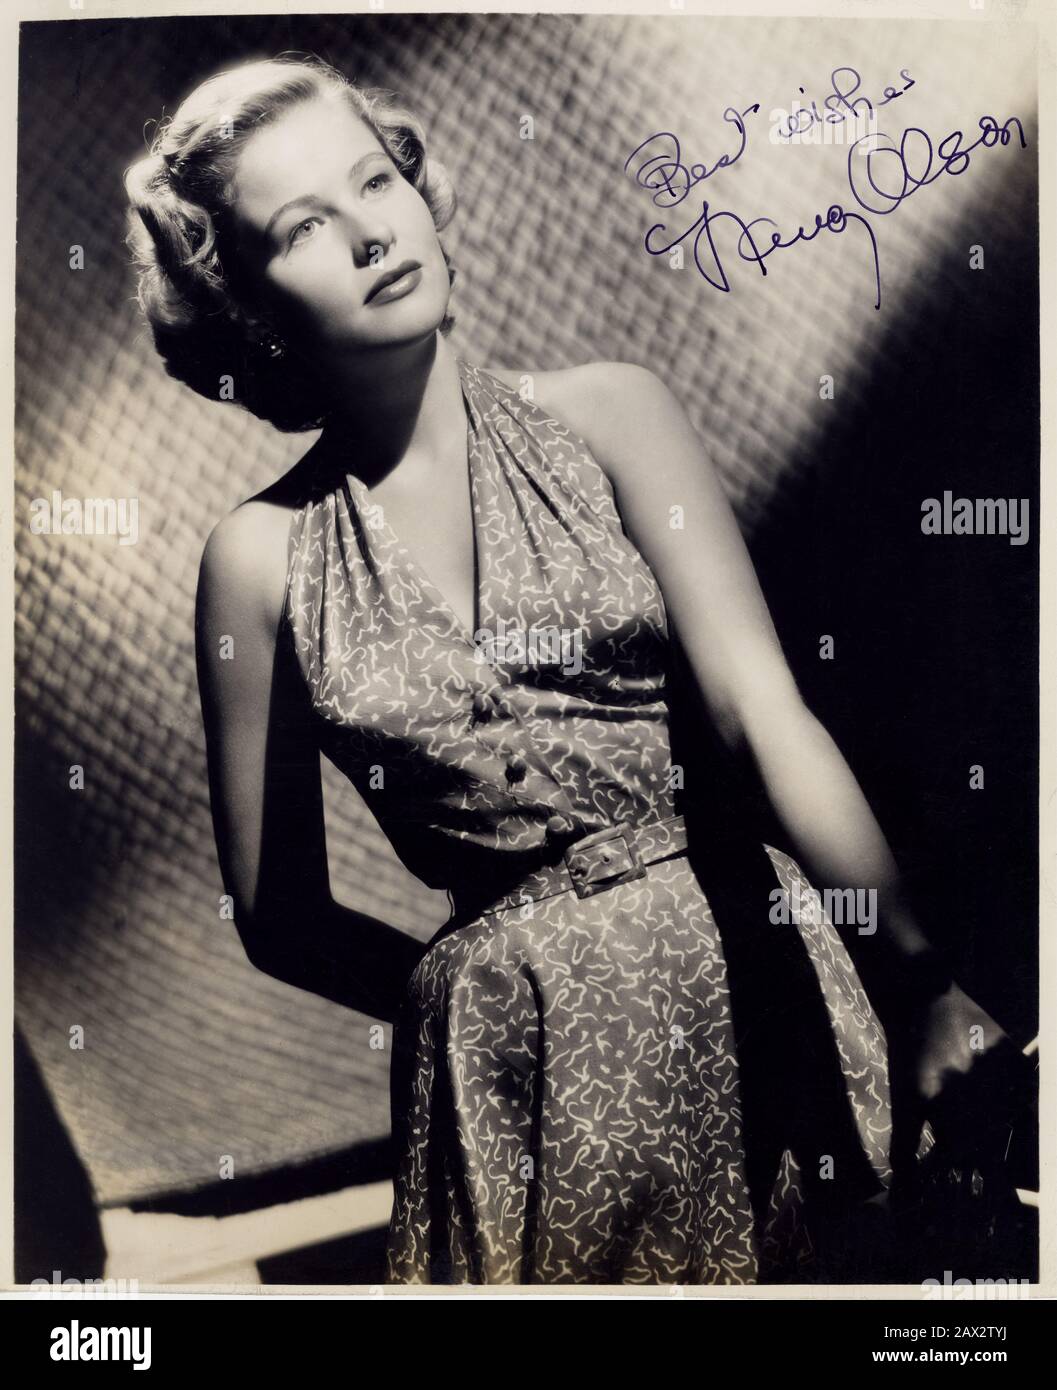 1951 ca  , USA : The american actress NANCY OLSON ( born July 14, 1928 in Milwaukee, Wisconsin ), pubblicity still . Most celebrated for his role in SUNSET BOULEVARD (  1950 - Viale del tramonto ) by Billy Wilder  - CINEMA - movie - portrait - ritratto - blonde hair - capelli biondi  - DIVA - DIVINA  -  bionda  - FASHION - MODA - ANNI CINQUANTA - 50's - '50 - AUTOGRAFO - AUTOGRAPH - signature - firma  -  --- Archivio GBB Stock Photo